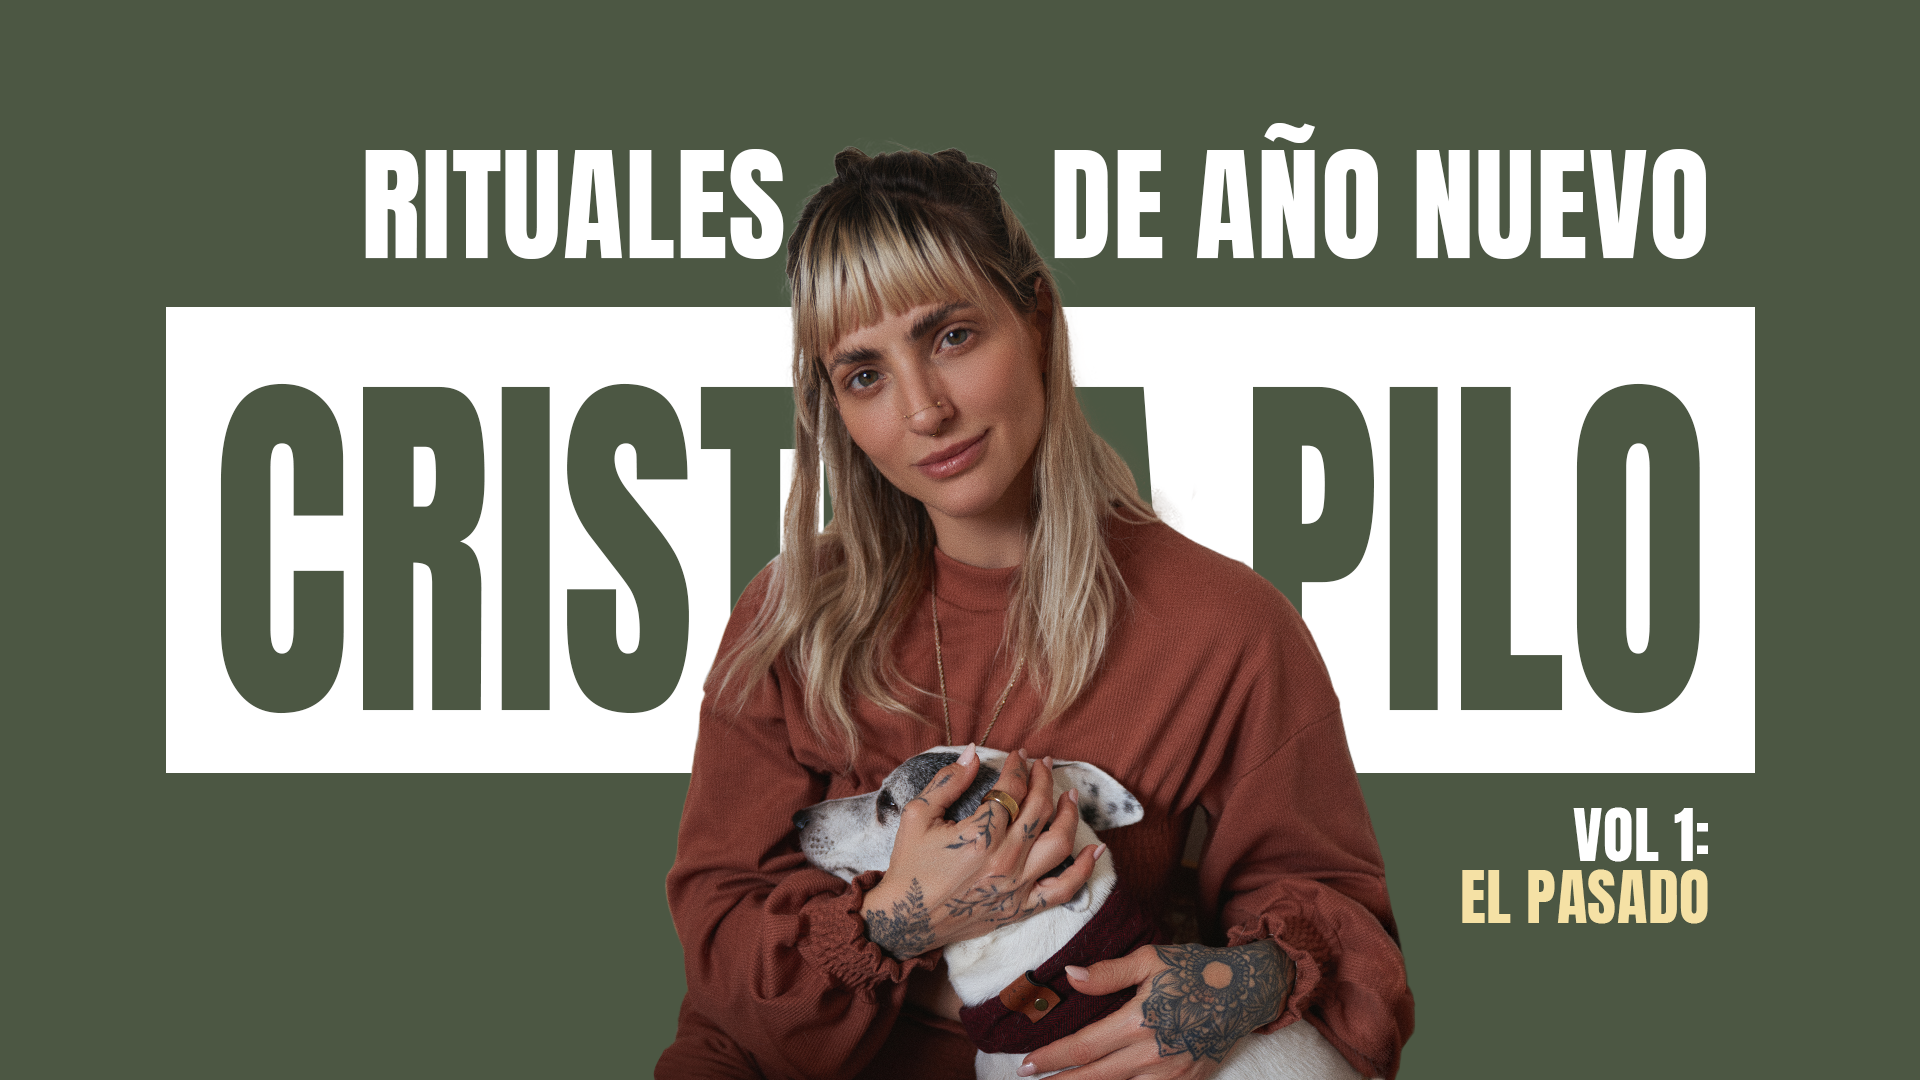 RITUALES DE AÑO NUEVO VOL 1 - EL PASADO | CRISTINA PILO | VLOG #4